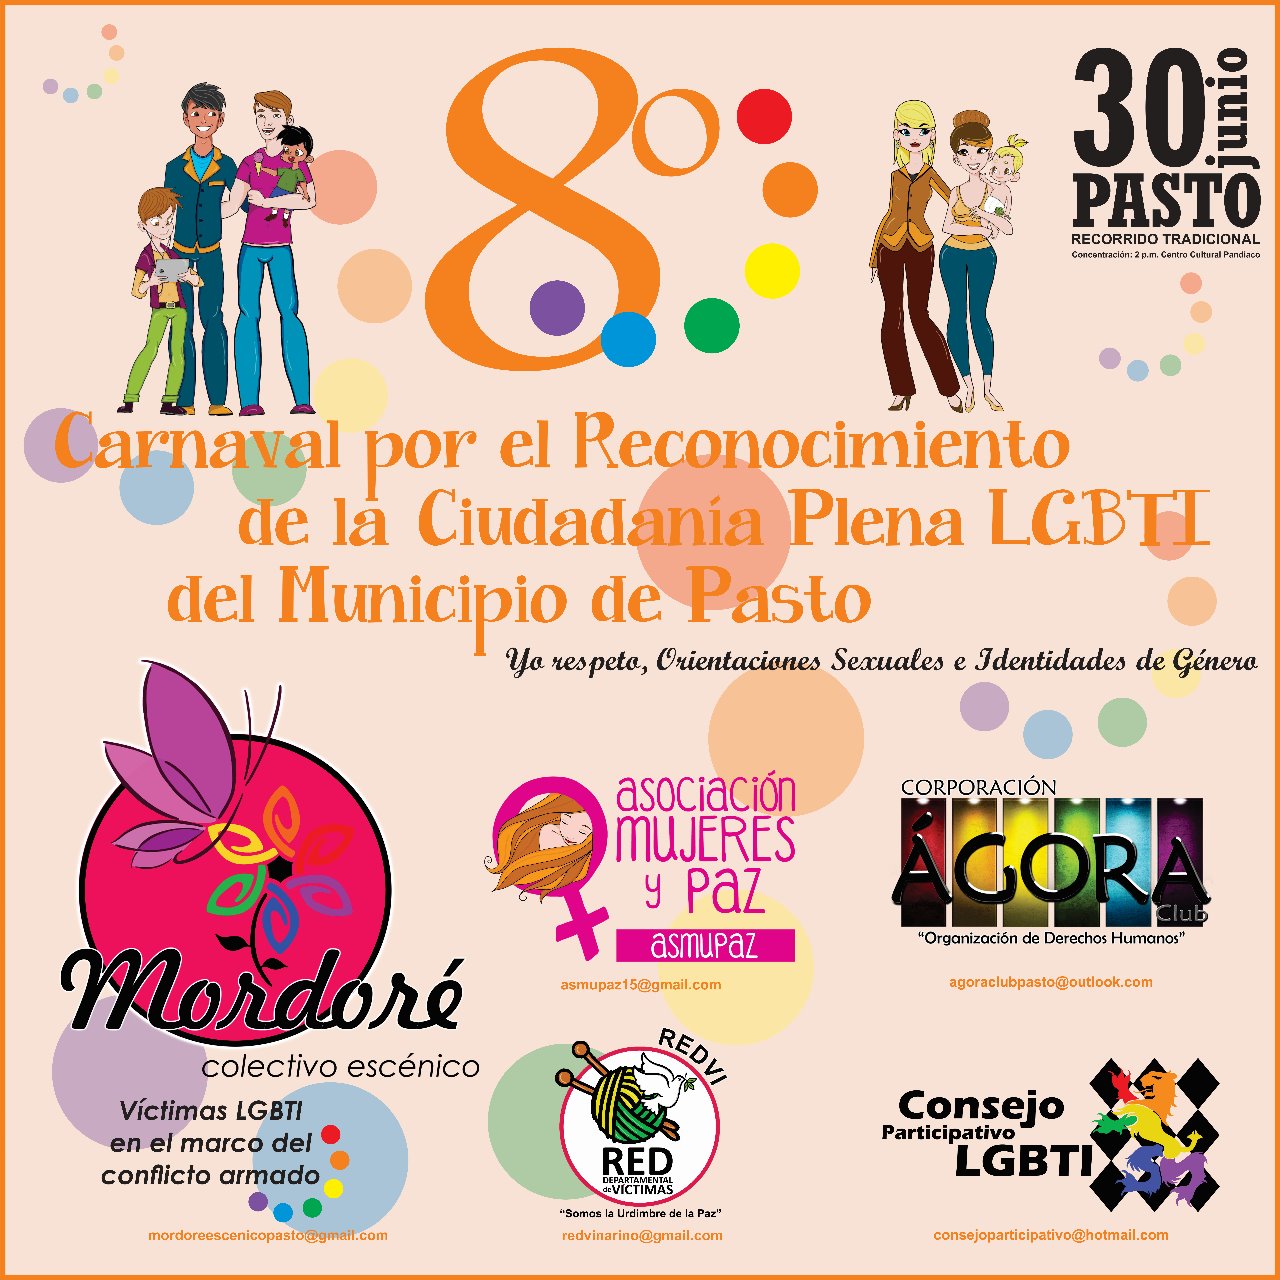  8 Carnaval Por El Reconocimiento De La Ciudadania Plena LGBTI Del Municipio De Pasto 2017 [PASTO] 